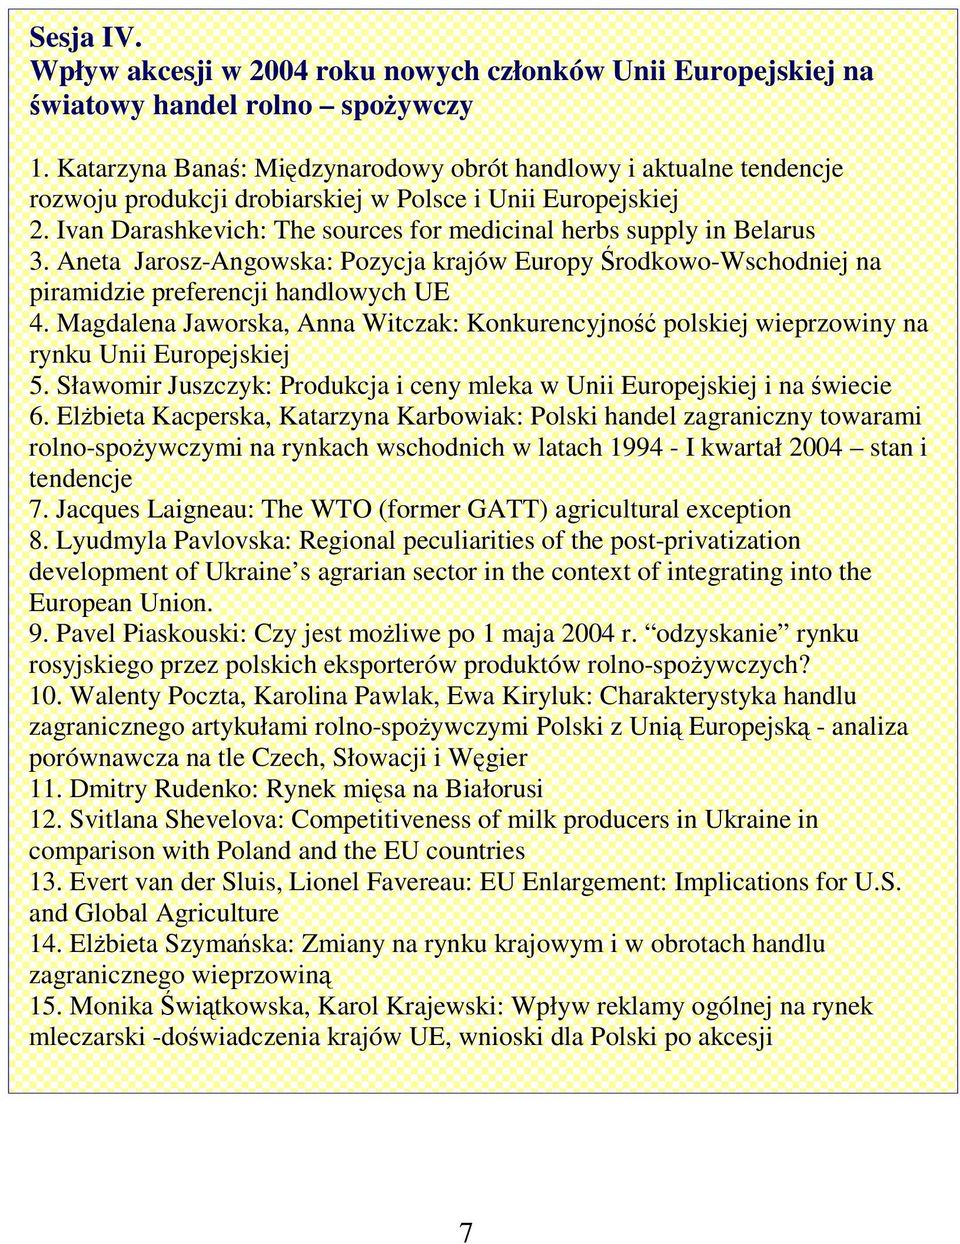 Aneta Jarosz-Angowska: Pozycja krajów Europy rodkowo-wschodniej na piramidzie preferencji handlowych UE 4.